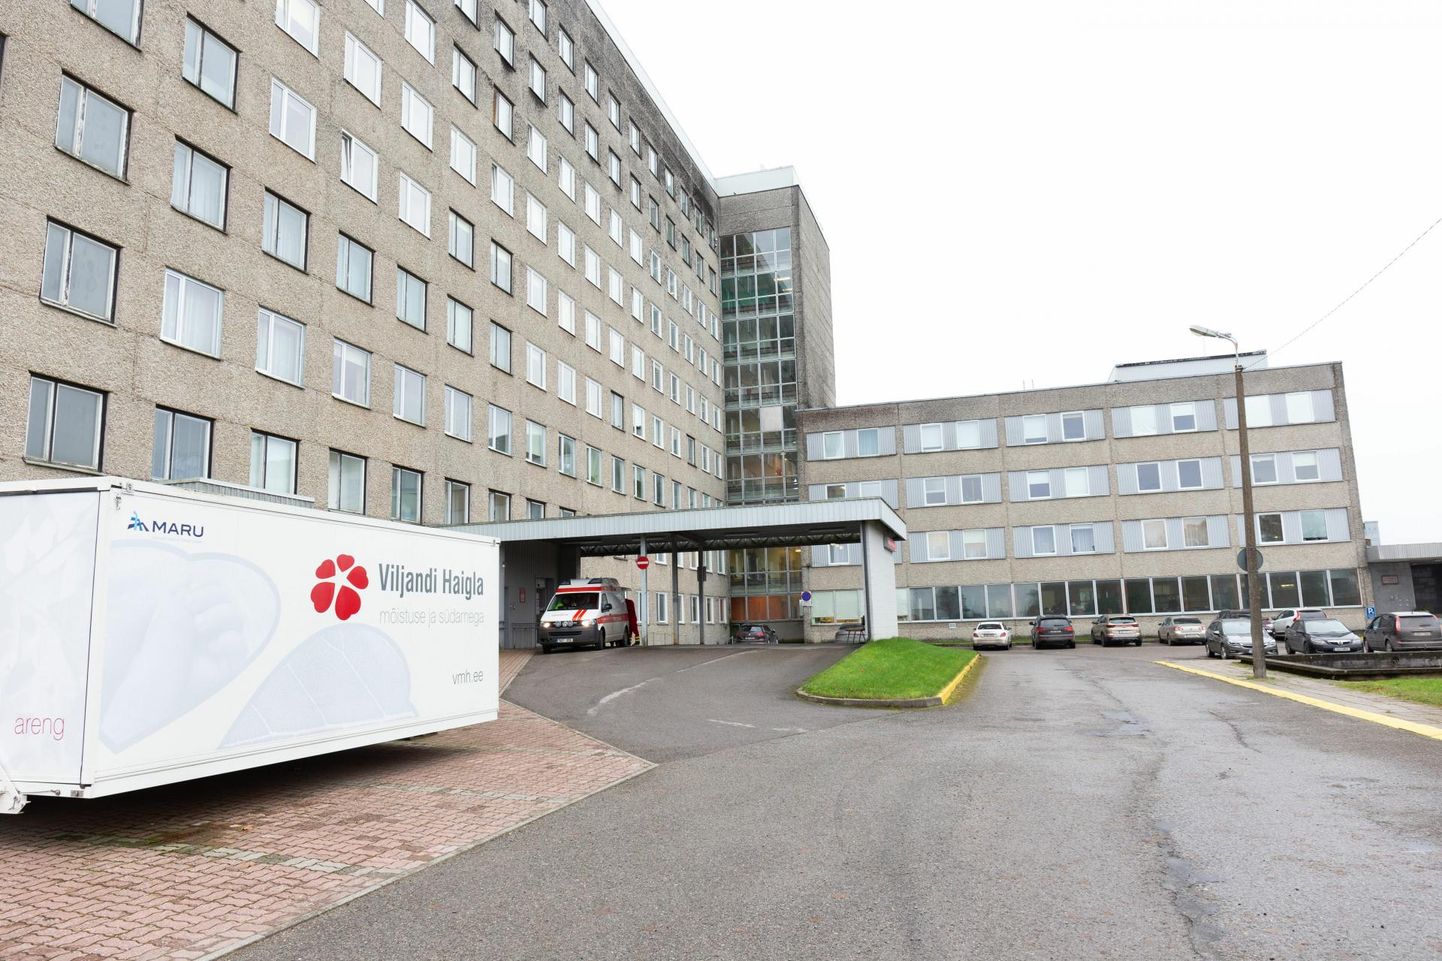 Internetikatkestus kestis teisipäeval Viljandi haiglas seitse tundi.